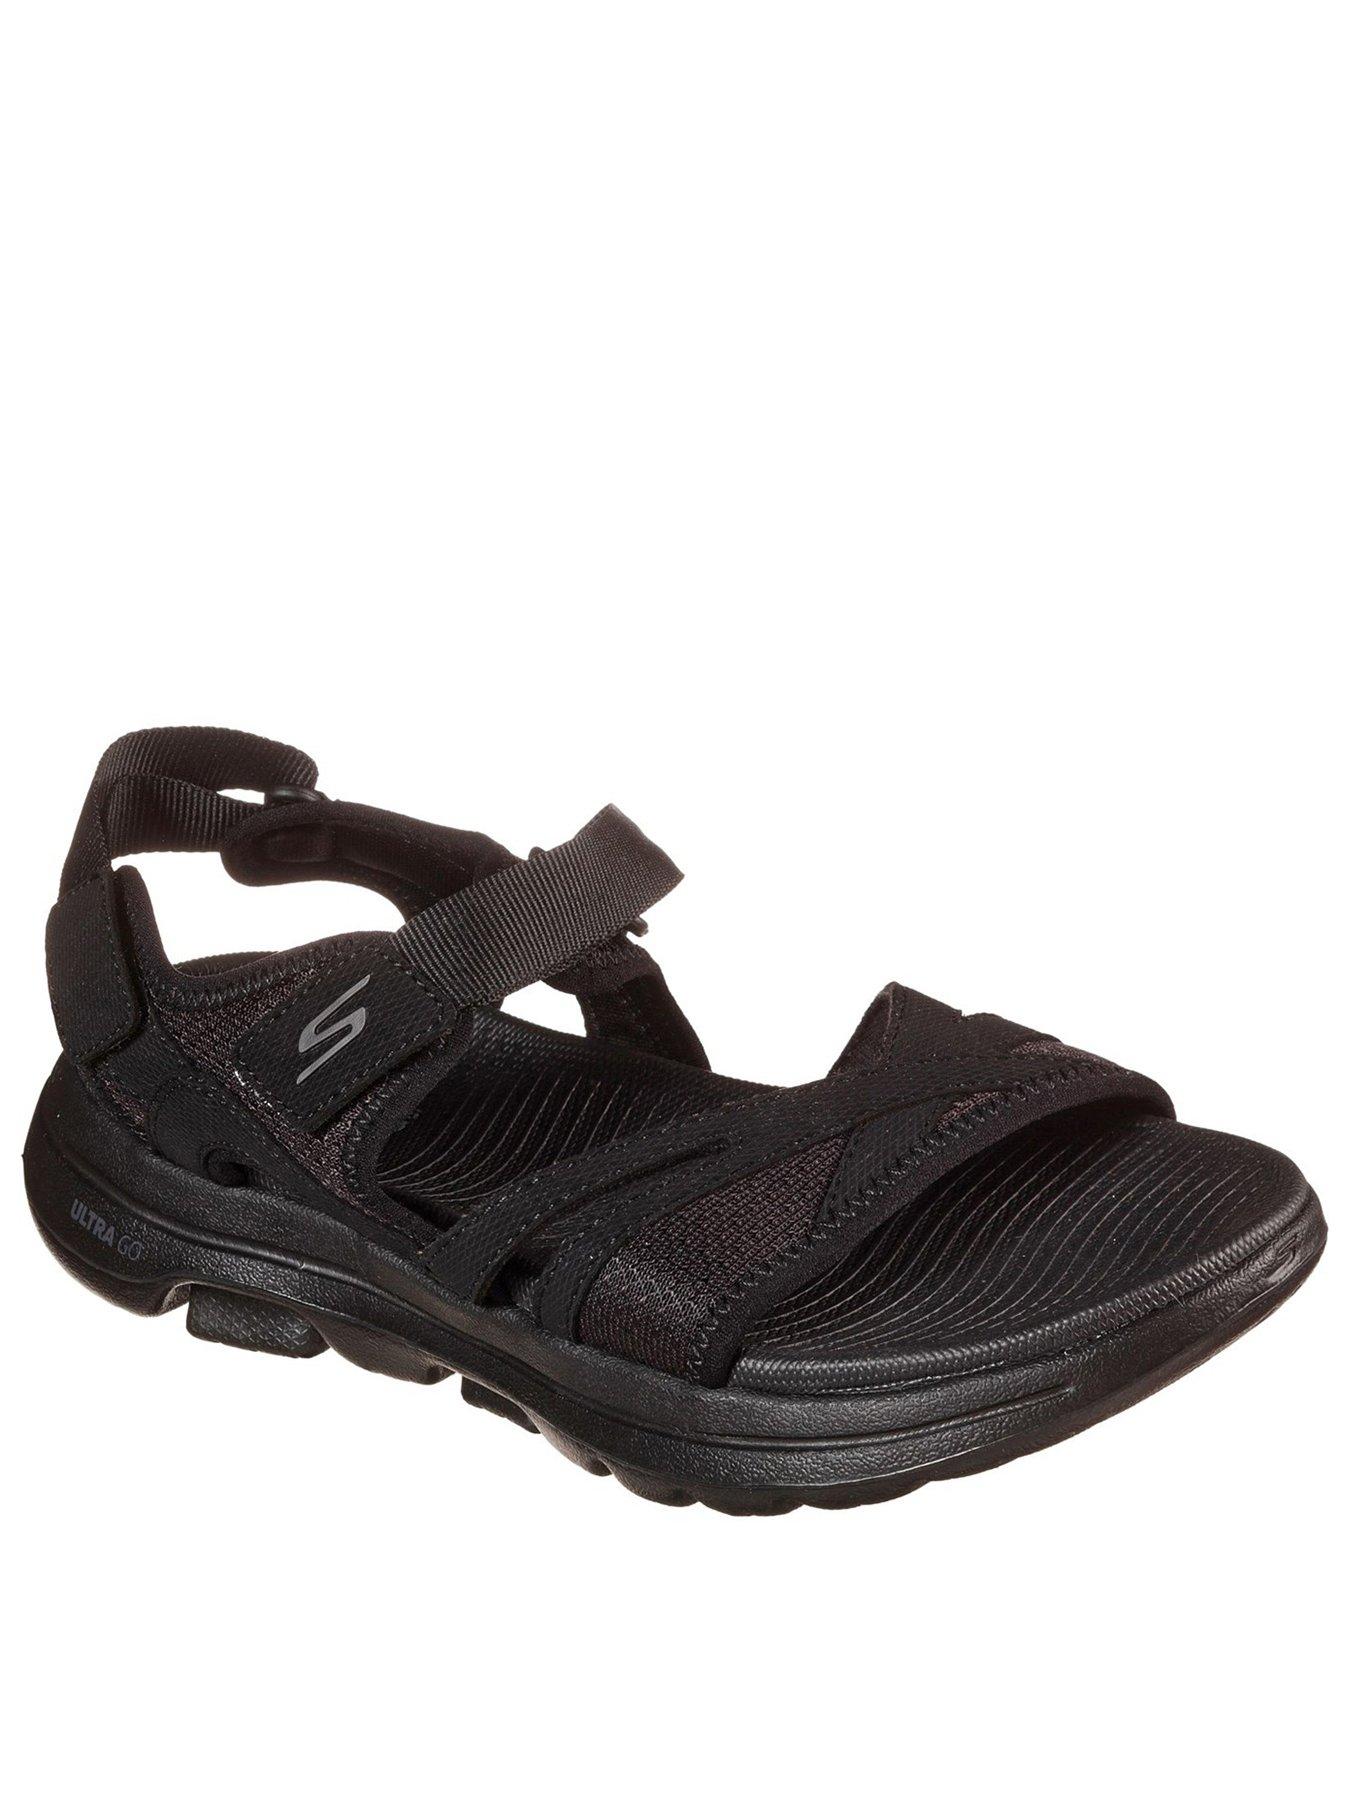 Skechers | Sandals \u0026 flip flops | Shoes 